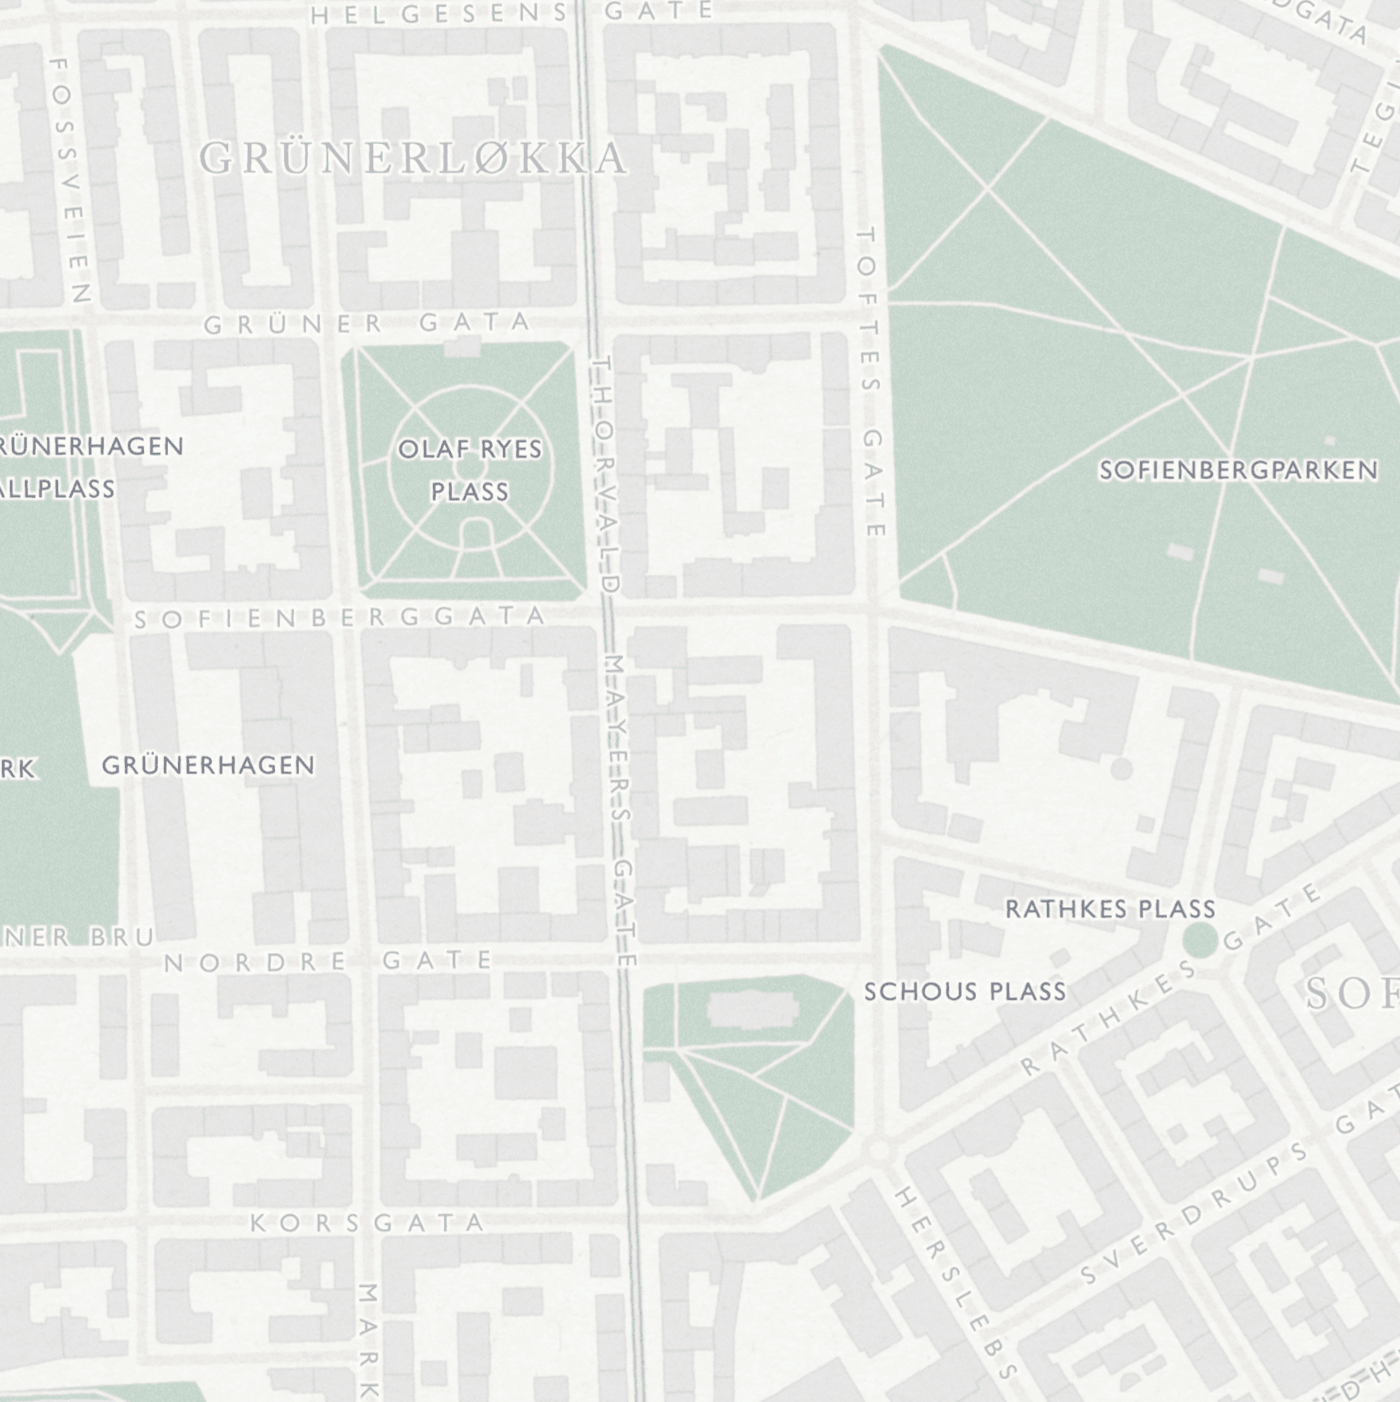 Bydelskart over Grünerløkka som viser Olaf Ryes plass, Schous plass, Rathkes Plass og Grünerhaven